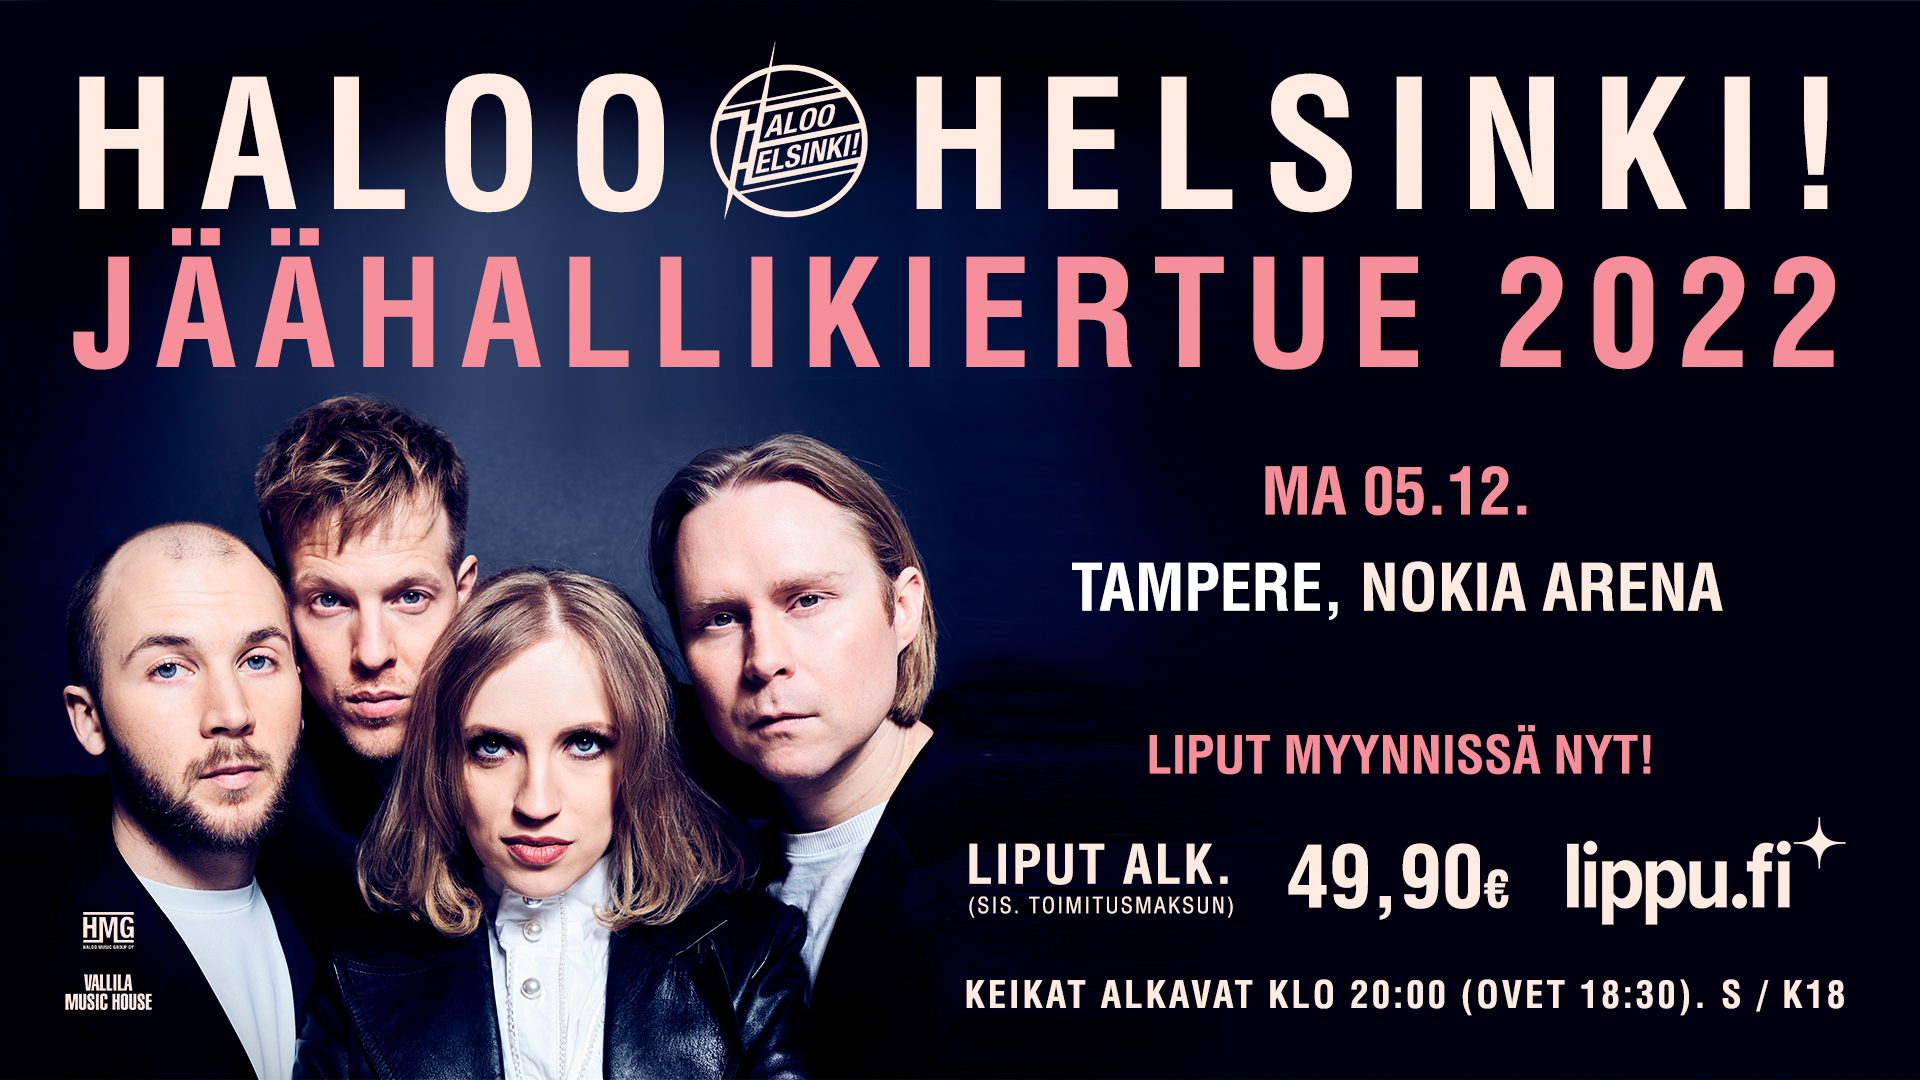 Haloo Helsinki! Jäähallikiertue 2022 - Nokia Arena